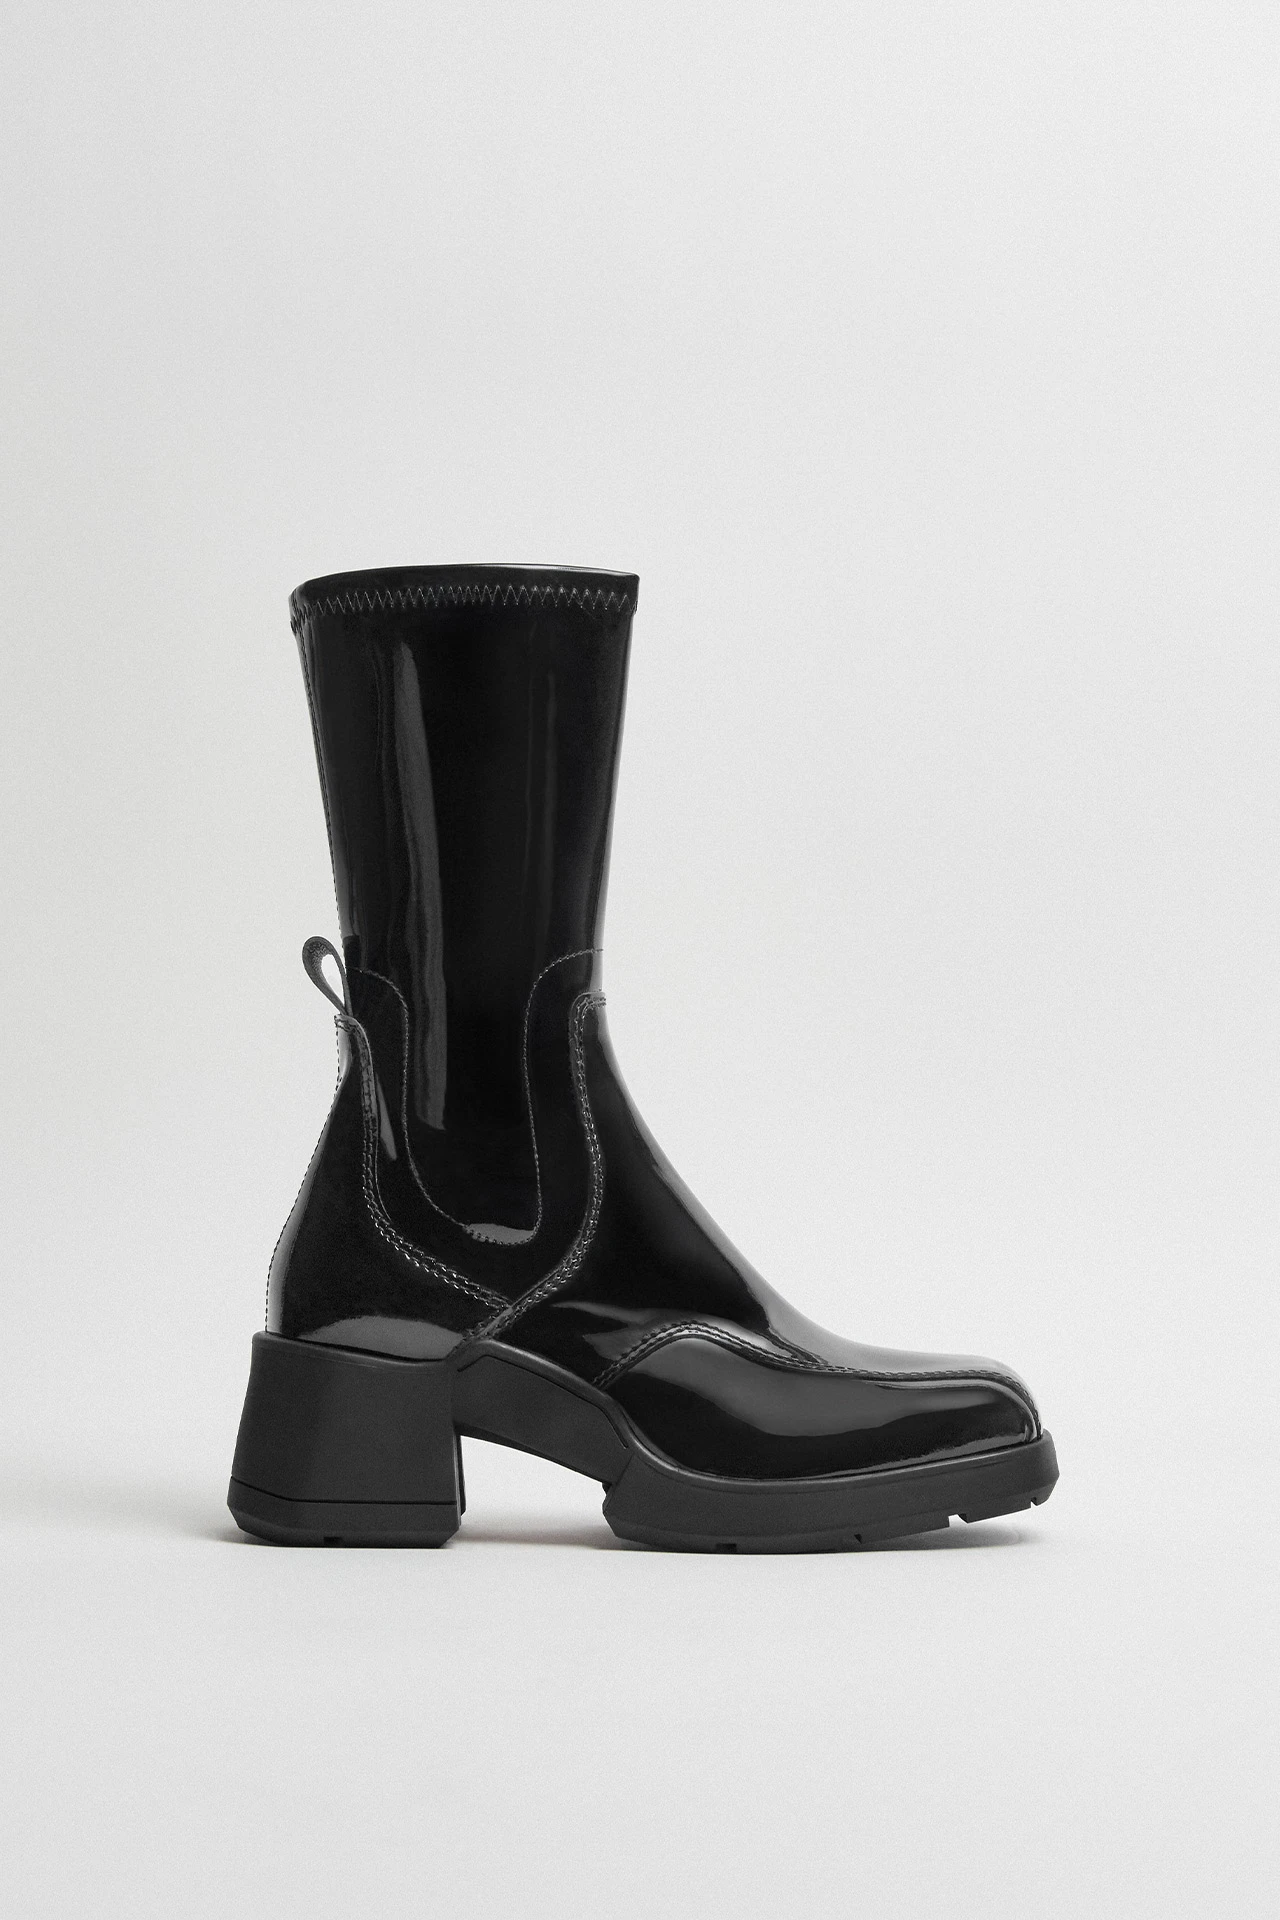 E8-viken-black-patent-boots-01